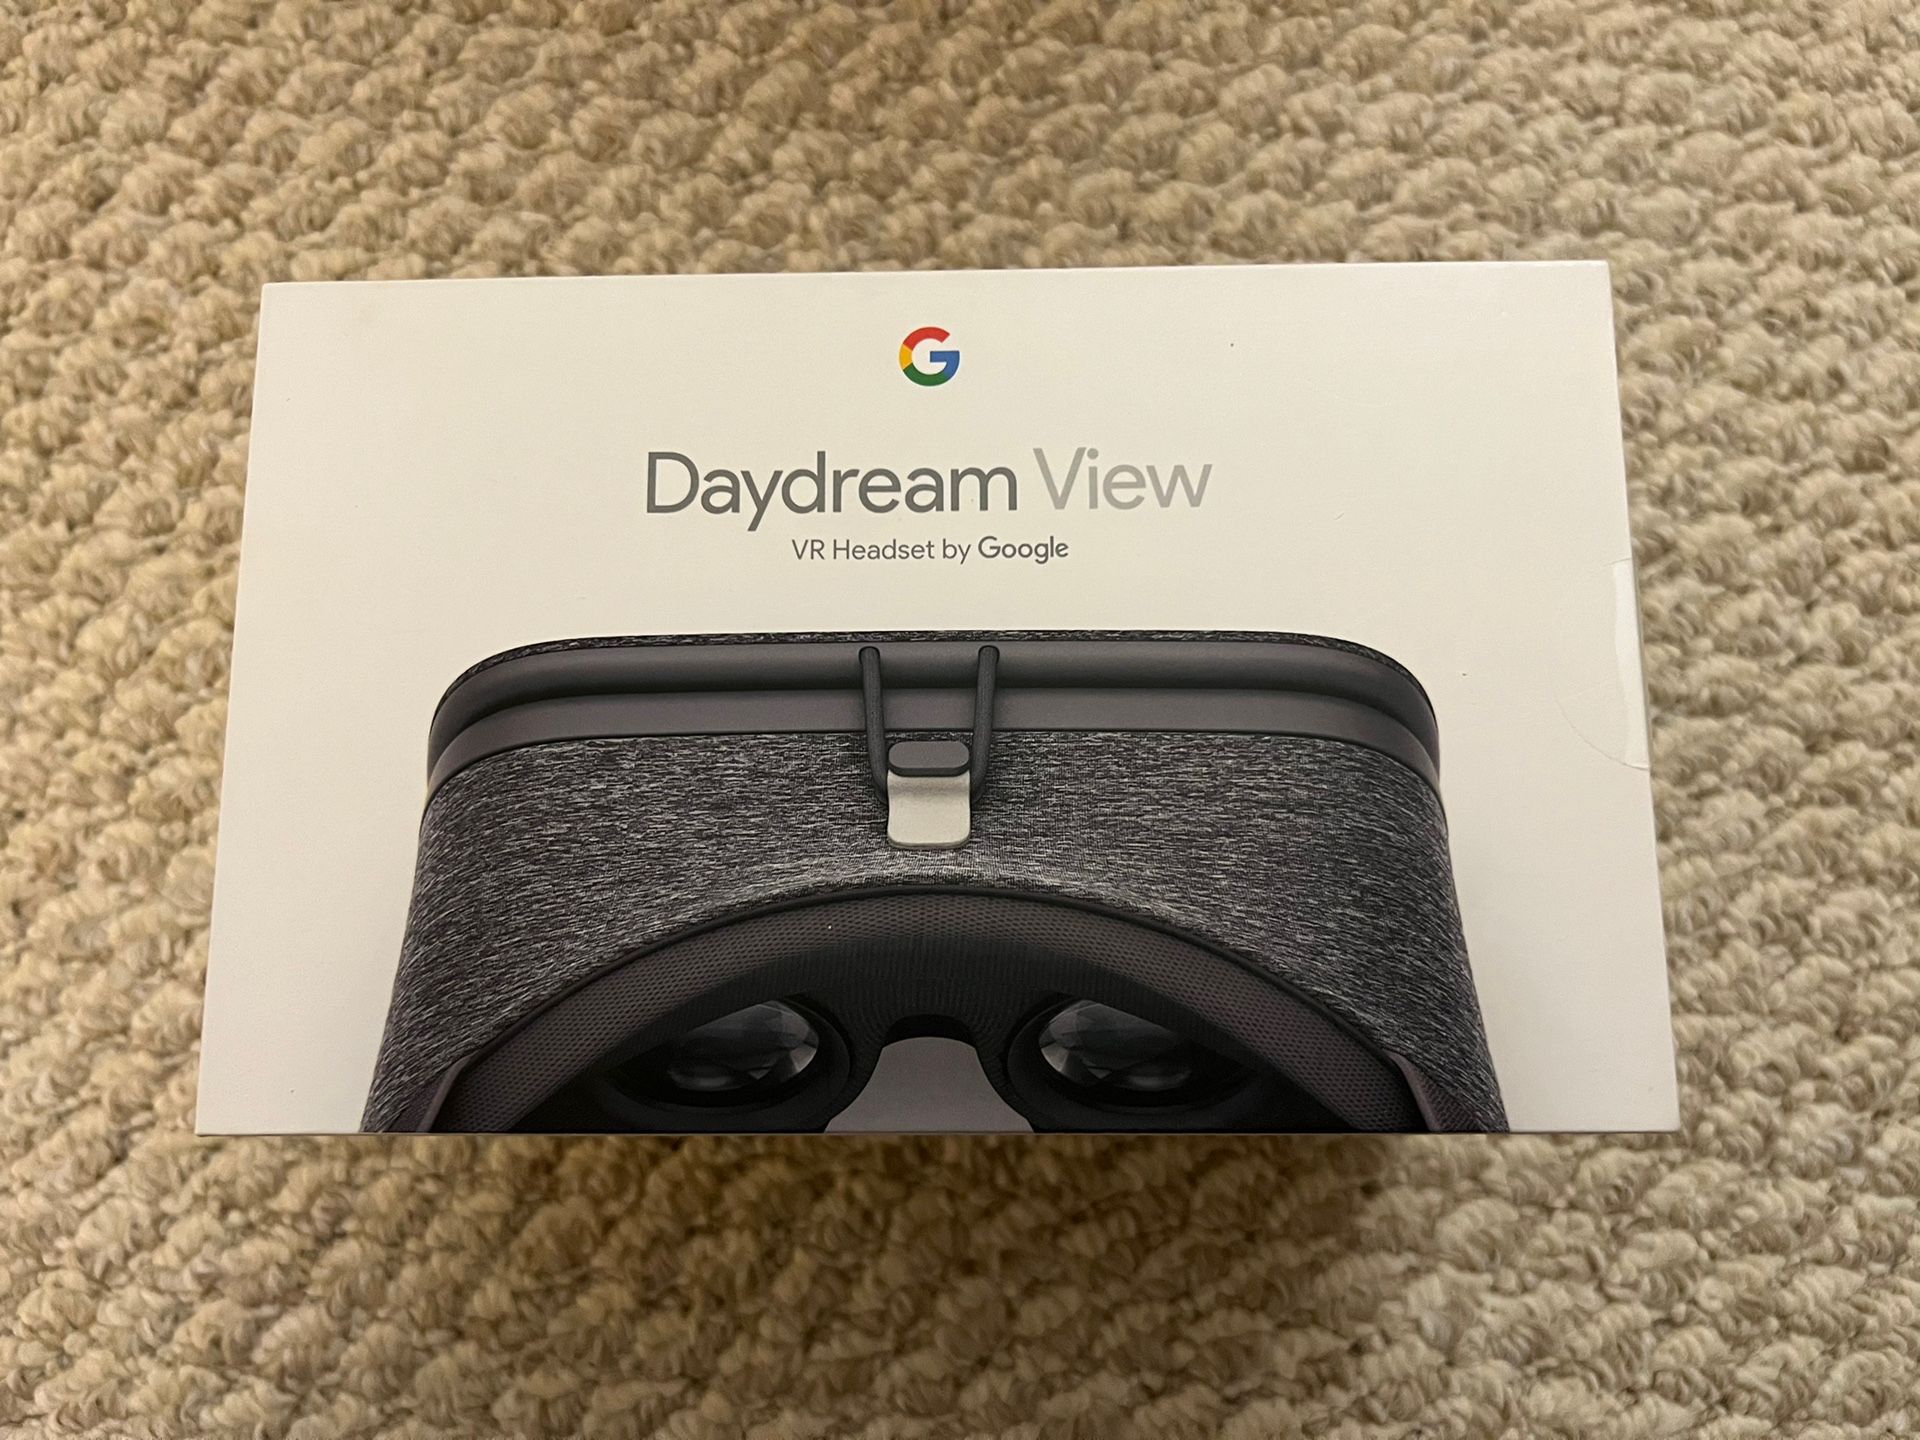 Daydream View VR